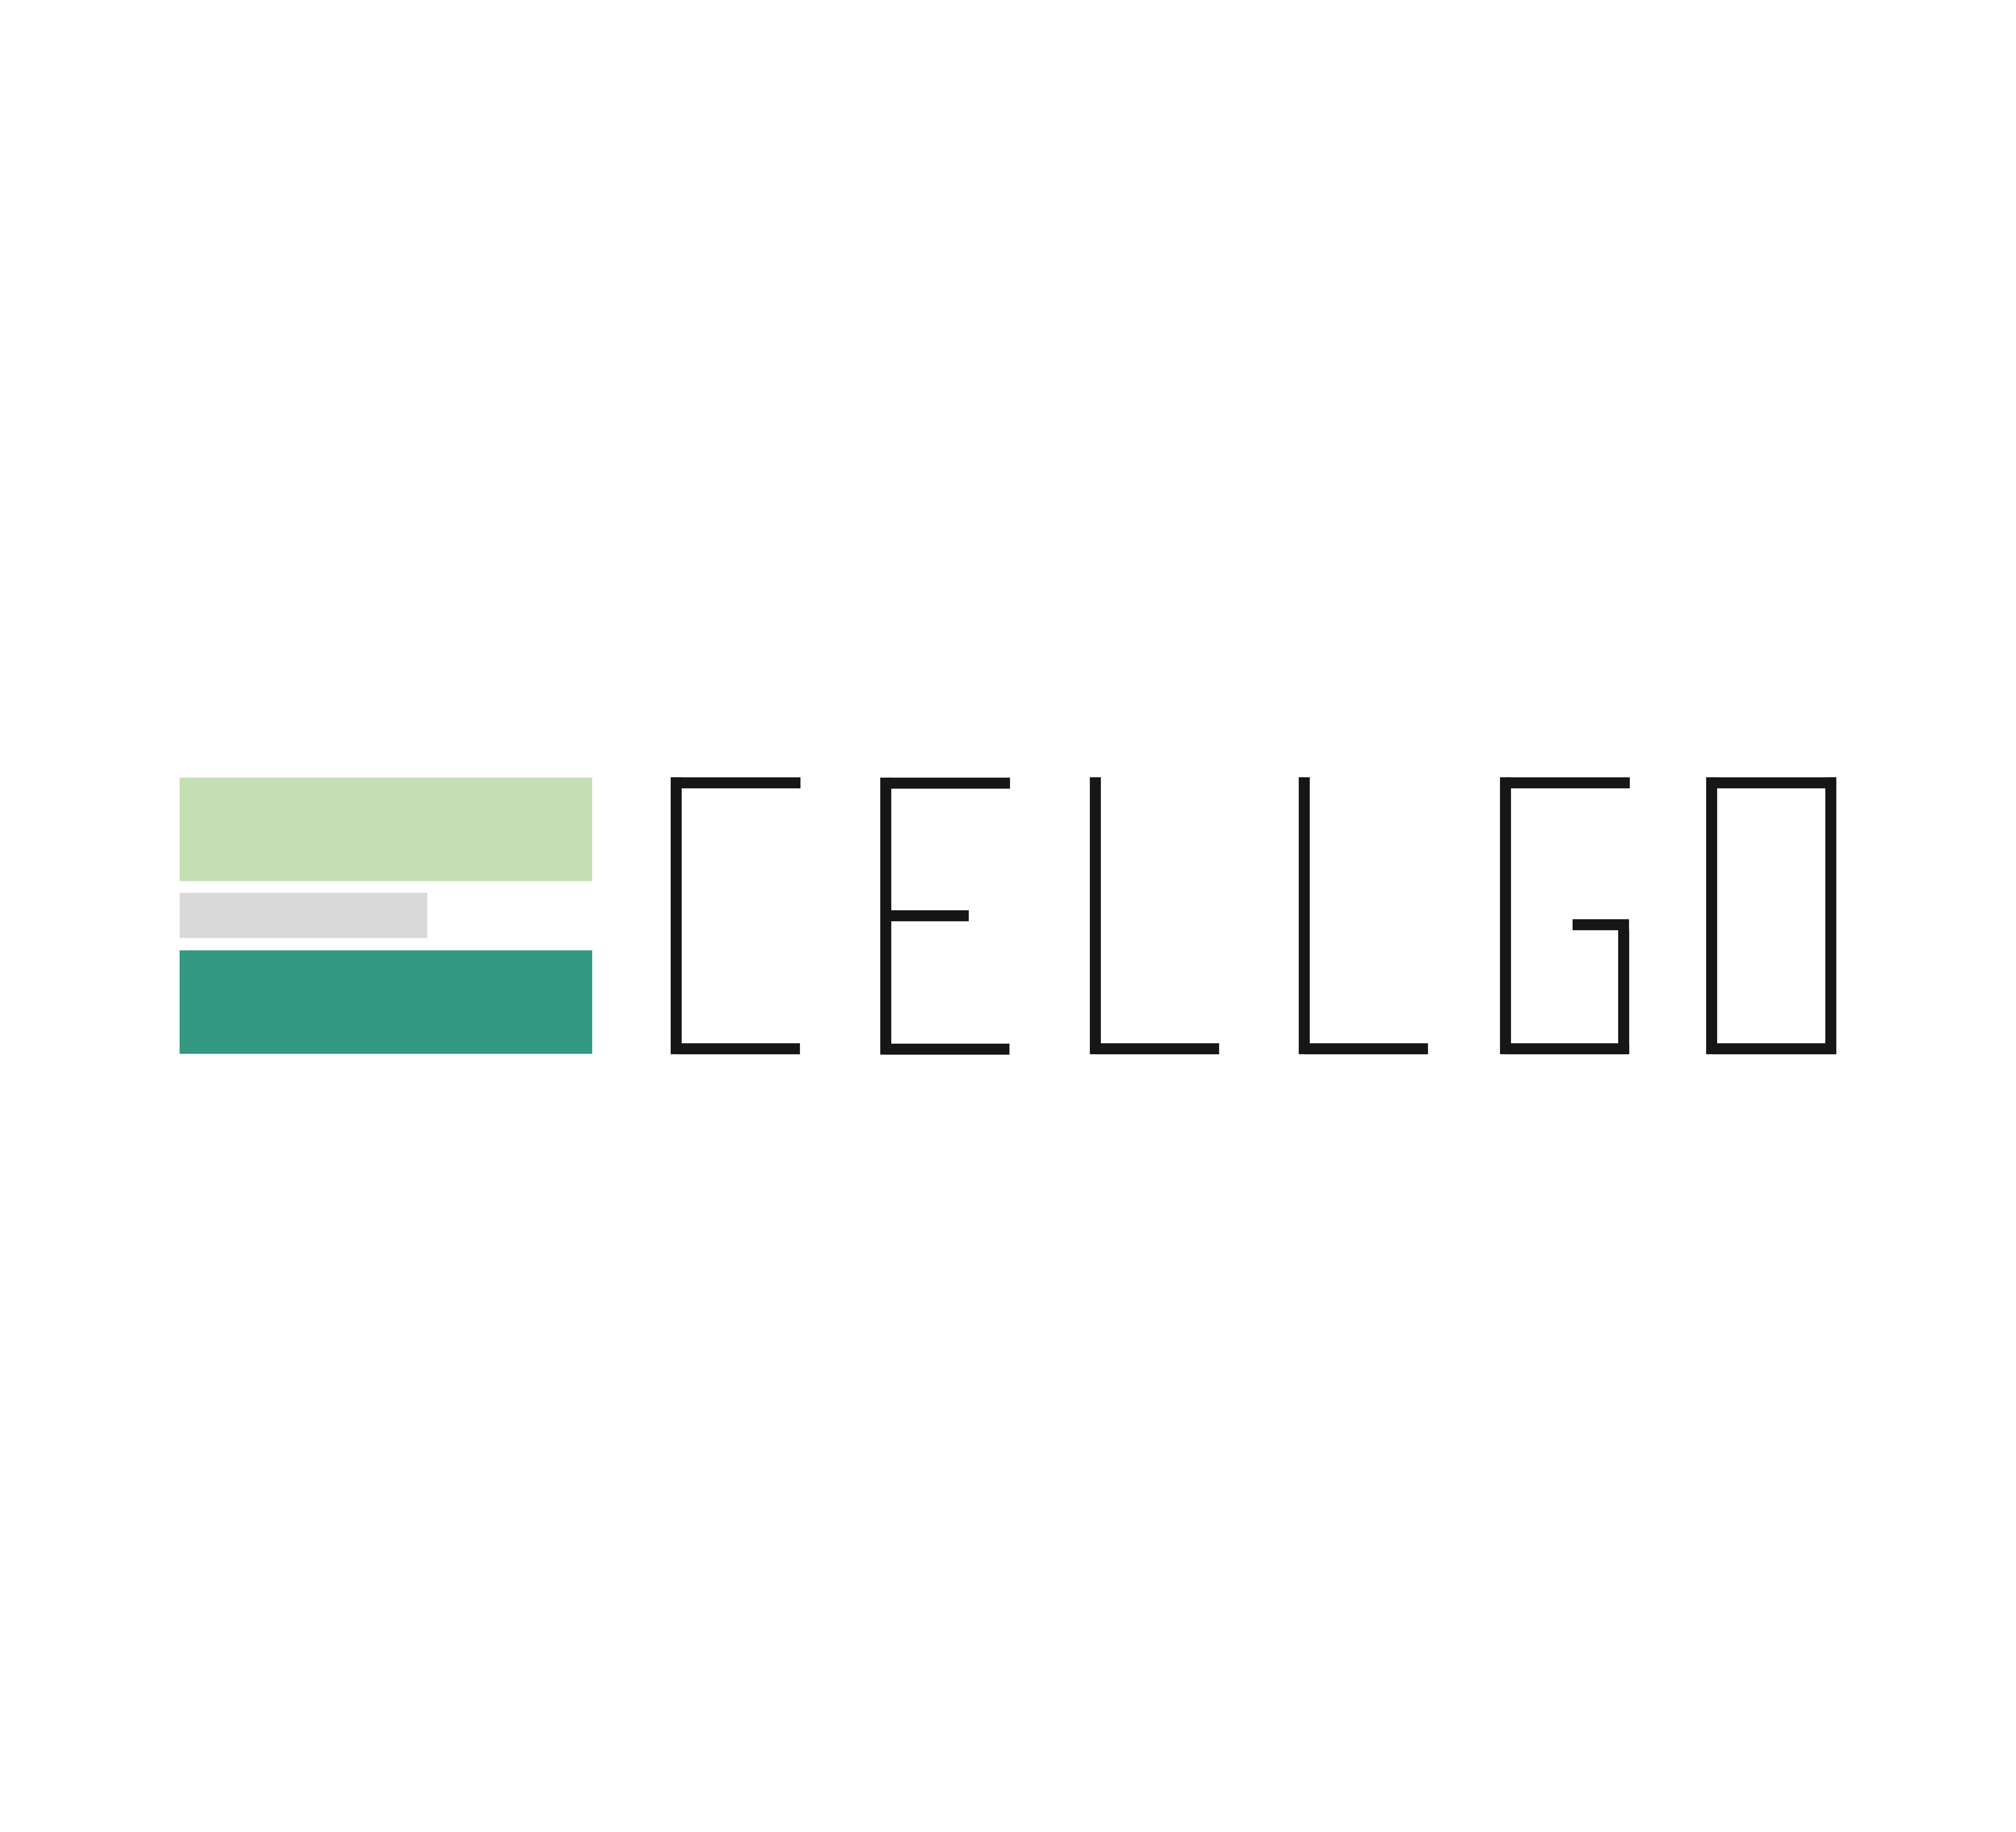 Logo Cellgo